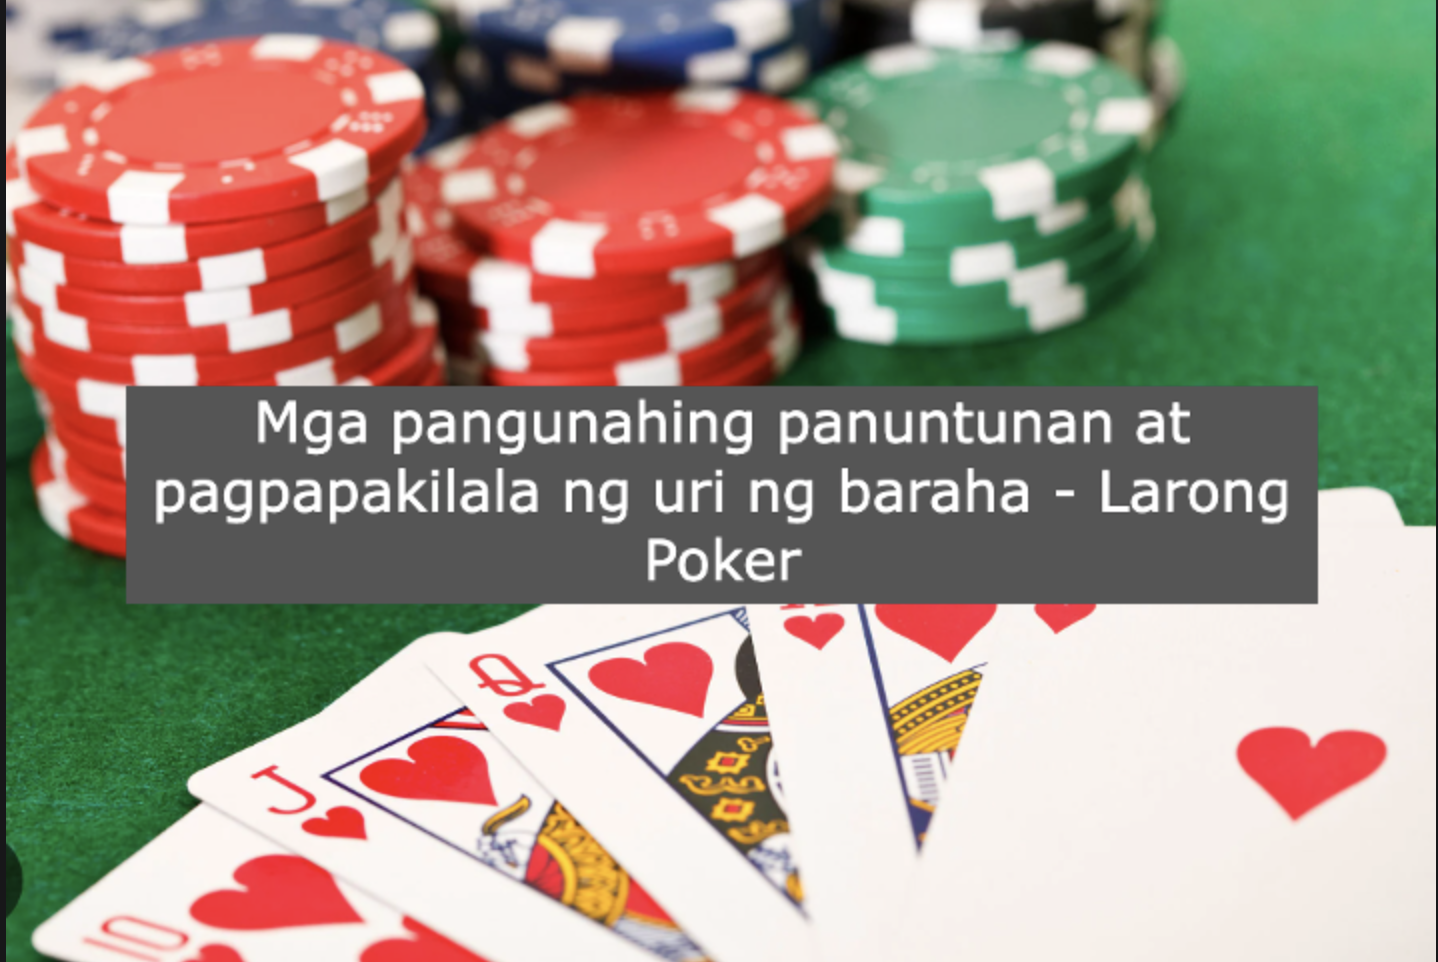 Mga pangunahing panuntunan at pagpapakilala ng uri ng baraha - Larong Poker